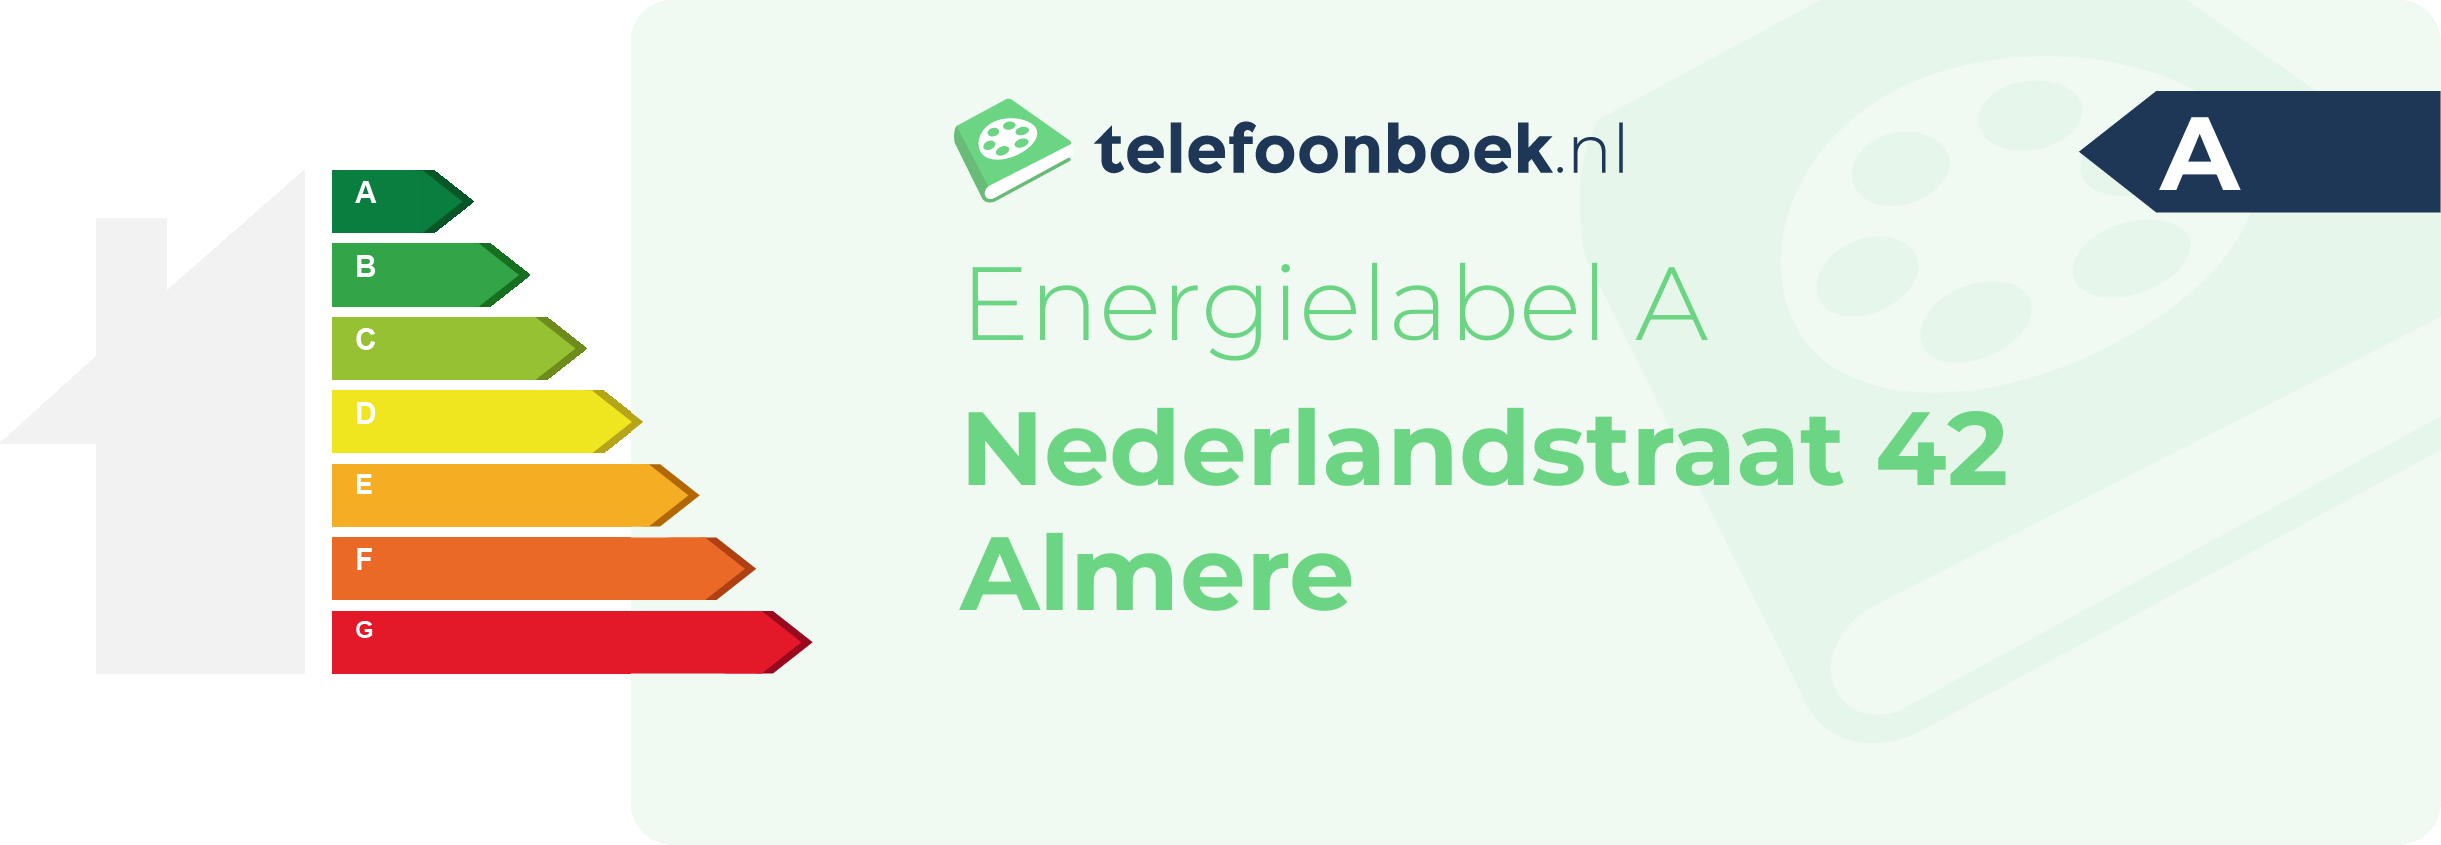 Energielabel Nederlandstraat 42 Almere